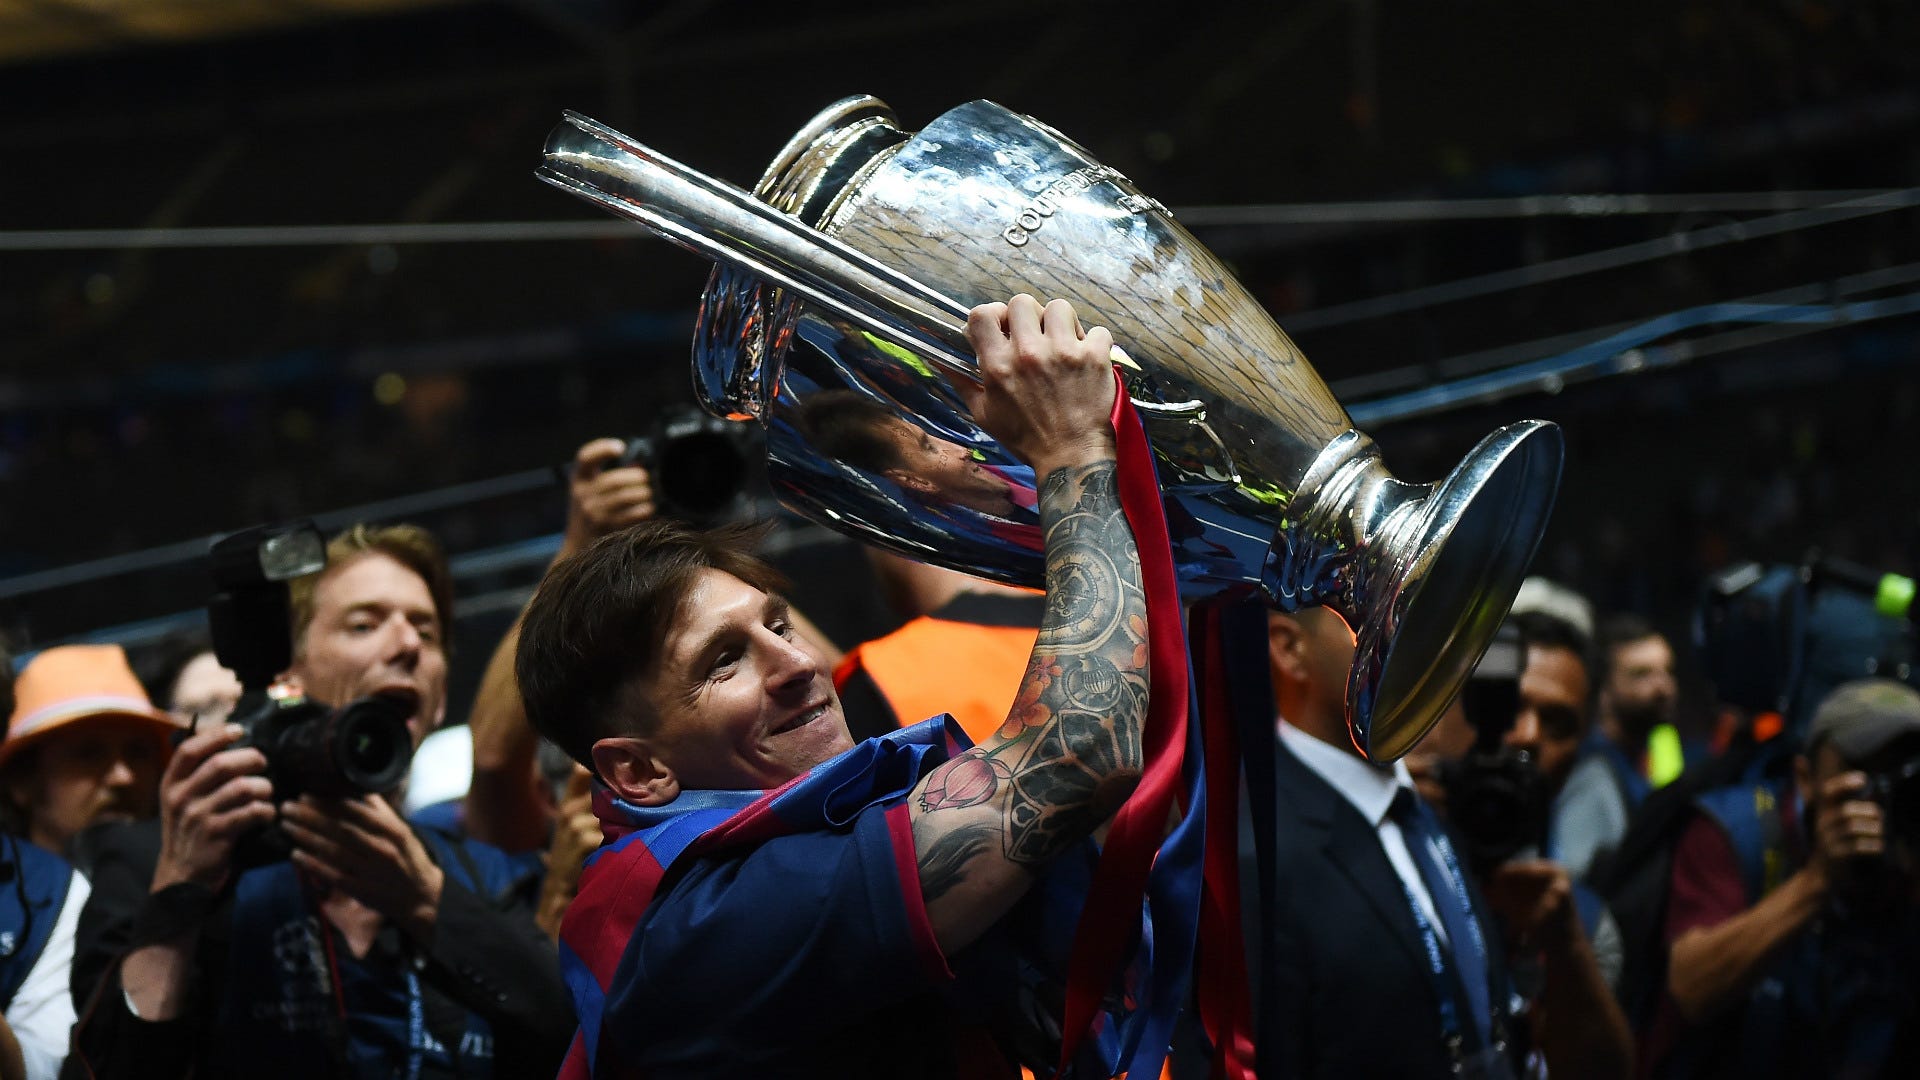 Hãy cùng tìm hiểu và khám phá hình ảnh của Messi trong Copa America 2024, nơi anh sẽ lại tiếp tục thể hiện tài năng và trở thành ngôi sao sáng nhất trên sân cỏ. Đừng bỏ lỡ cơ hội xem Messi chơi bóng trong một giải đấu quốc gia đầy kịch tính và đẫm máu.